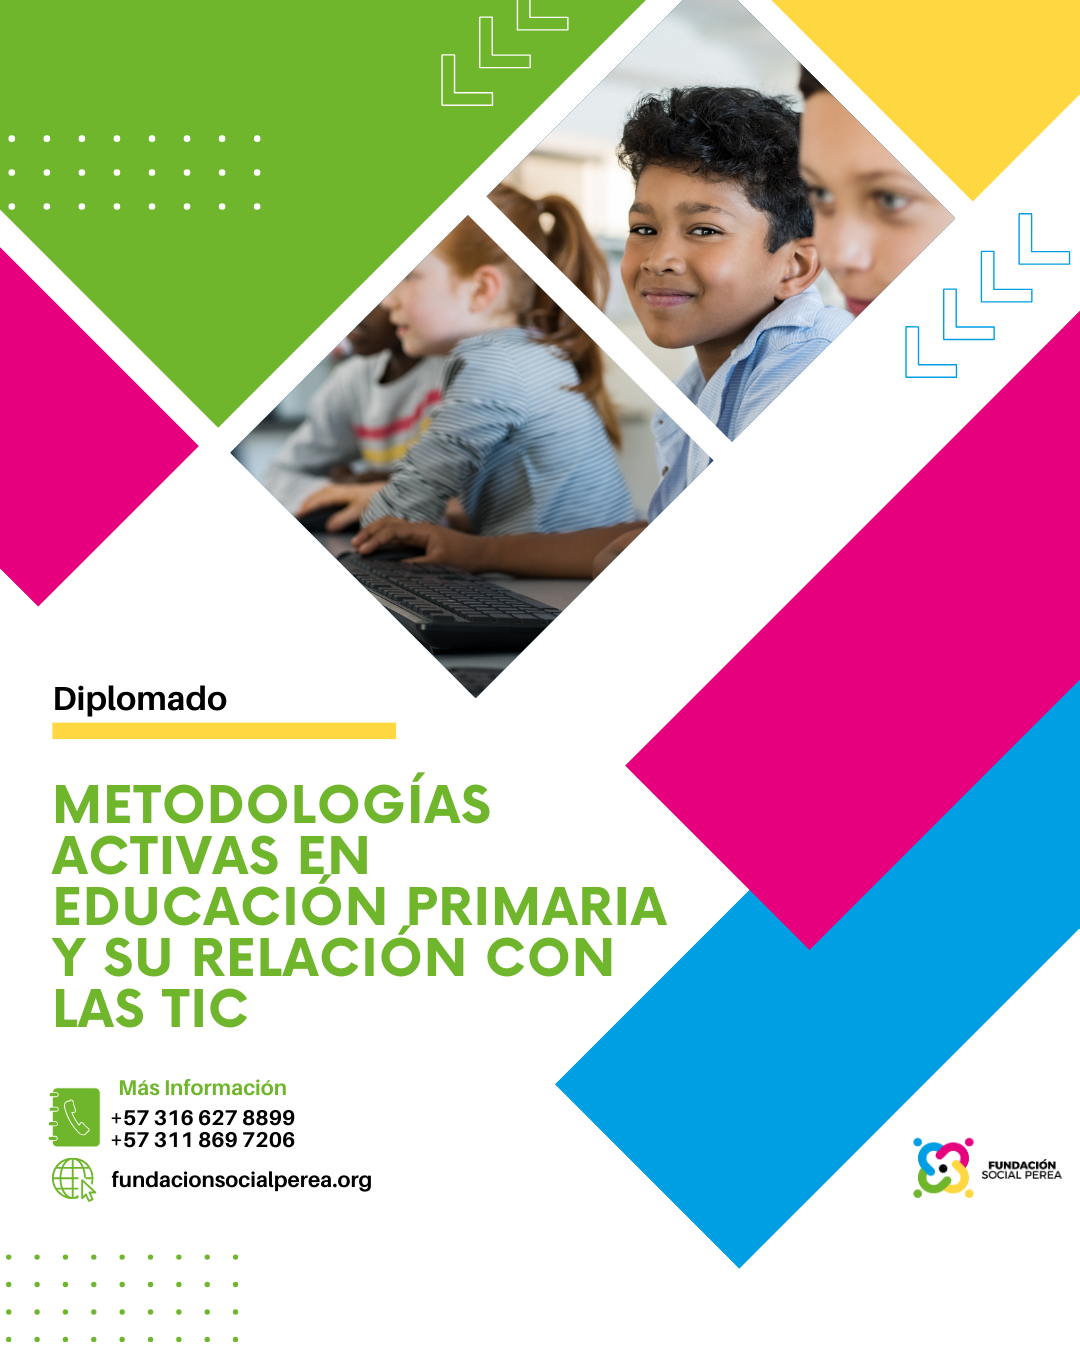 Metodologías Activas en Educación Primaria y su Relación con las Tic